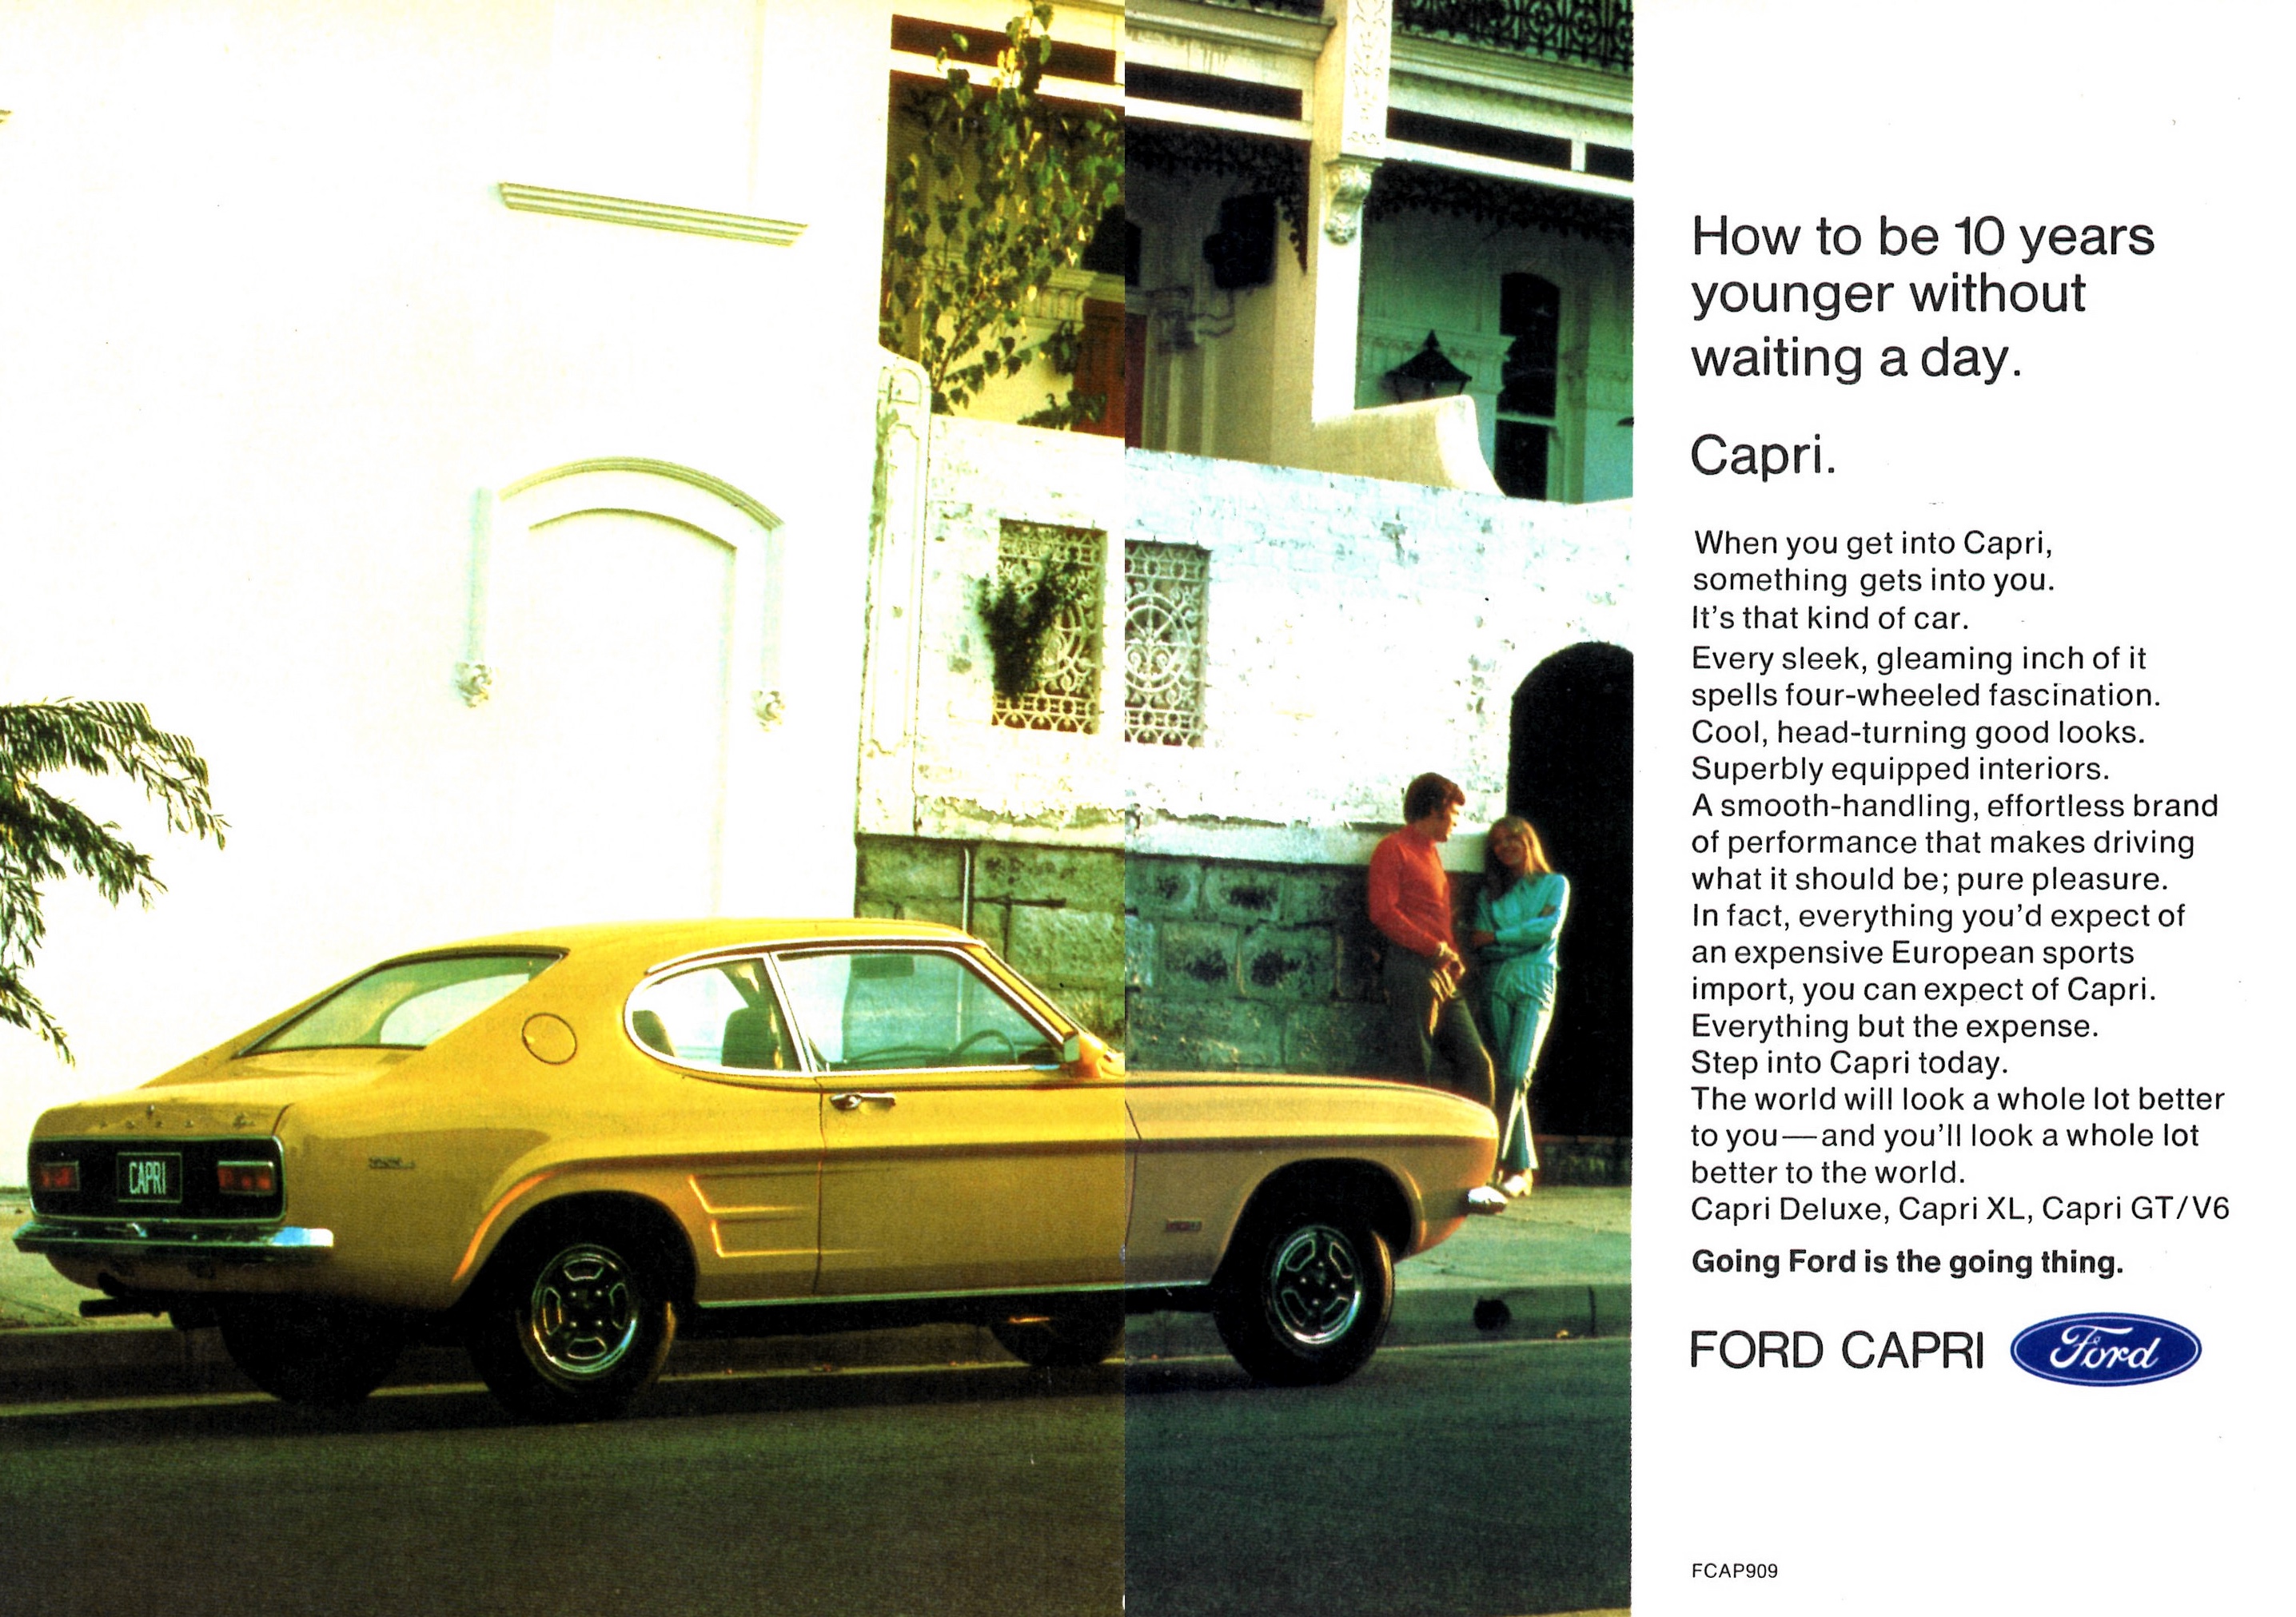 1972 Ford Capri Deluxe XL & GT-V6